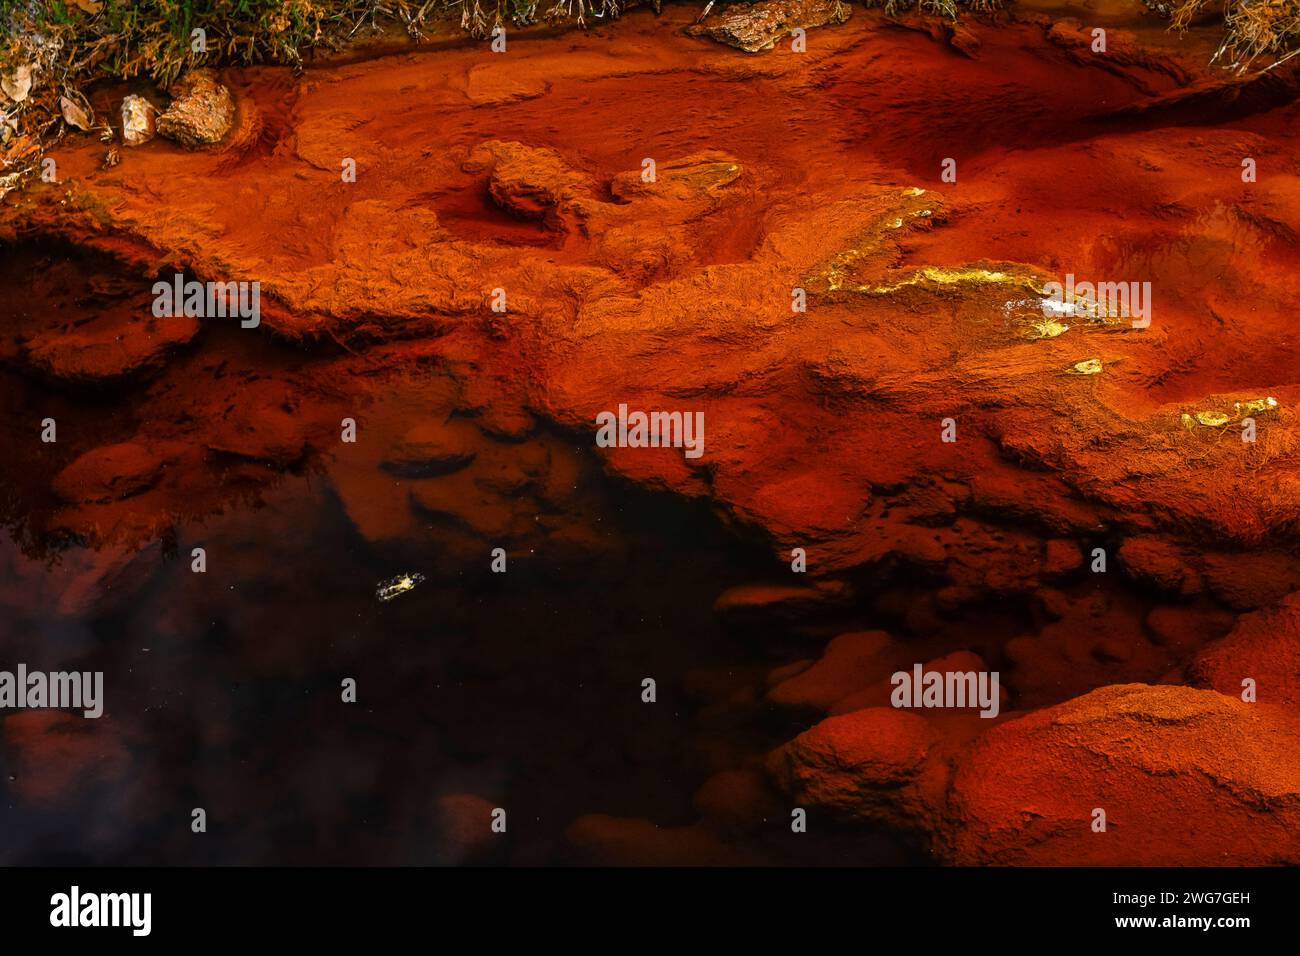 Der Rio Tinto in Huelva, Spanien, weist auffällige rote und orangene eisenreiche Ablagerungen und Spuren grüner Mikroorganismen auf Stockfoto